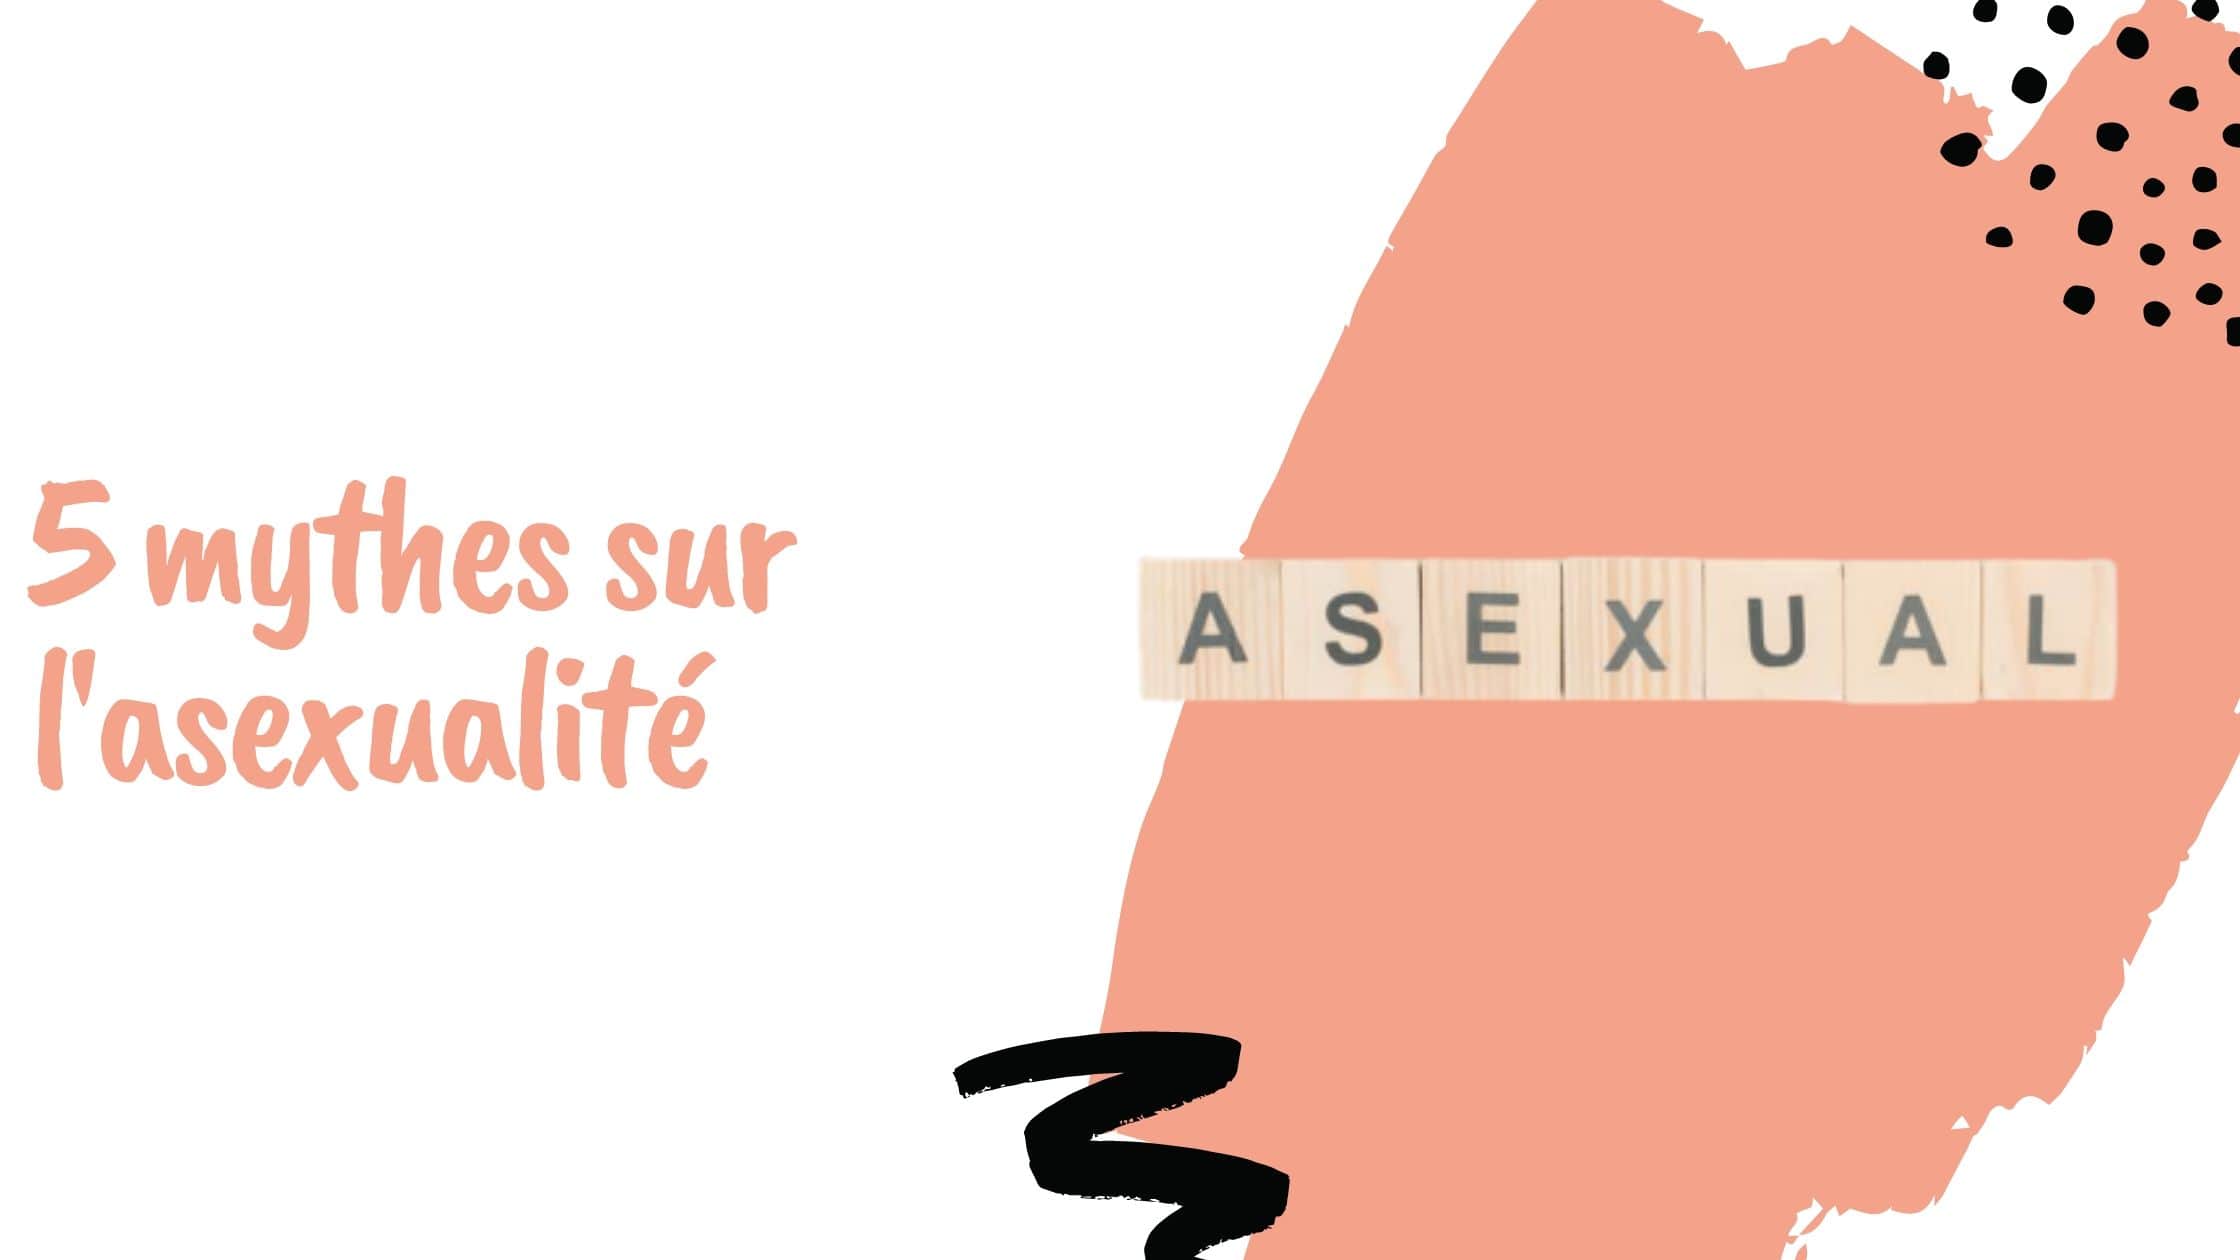 5 mythes sur l'asexualité